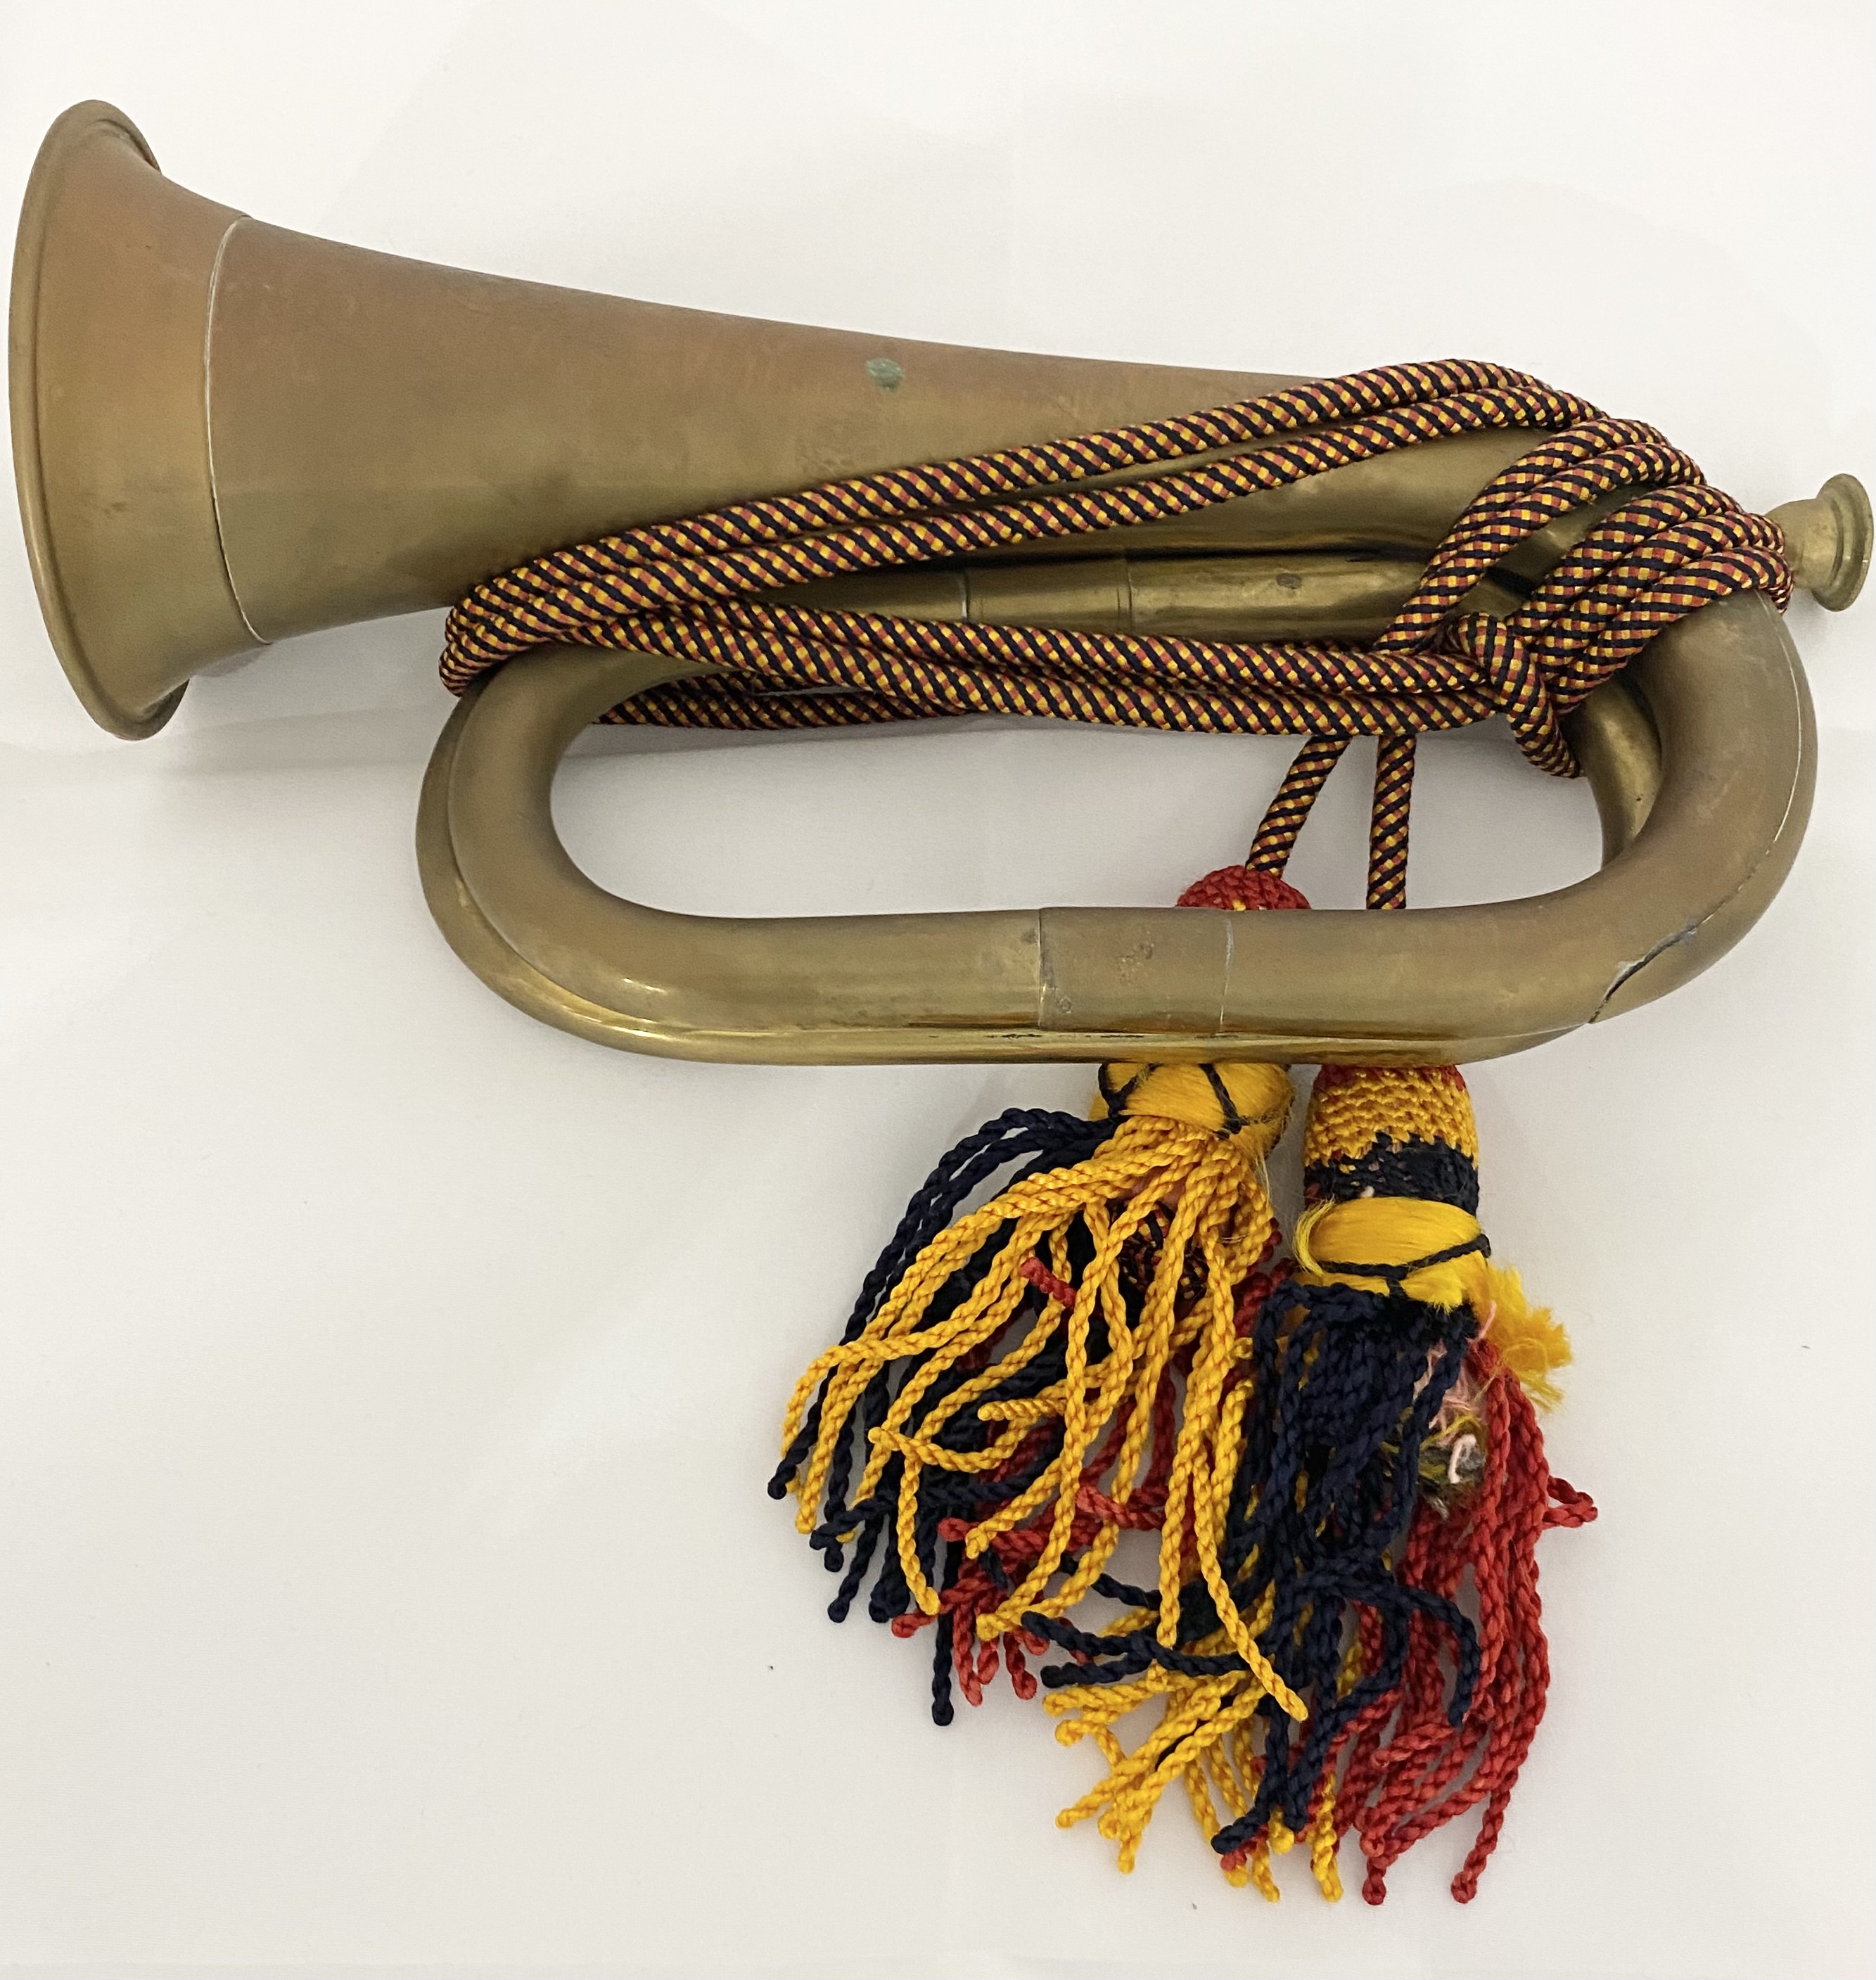 A vintage brass bugle